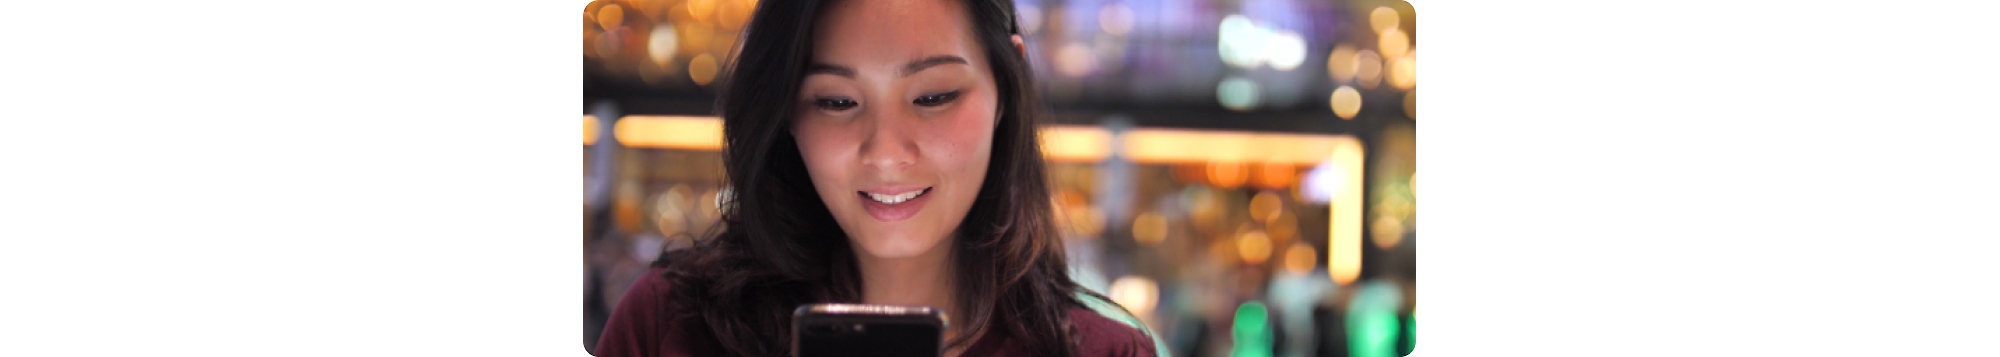 Egy fiatal ázsiai nő a mobiltelefonját nézi.